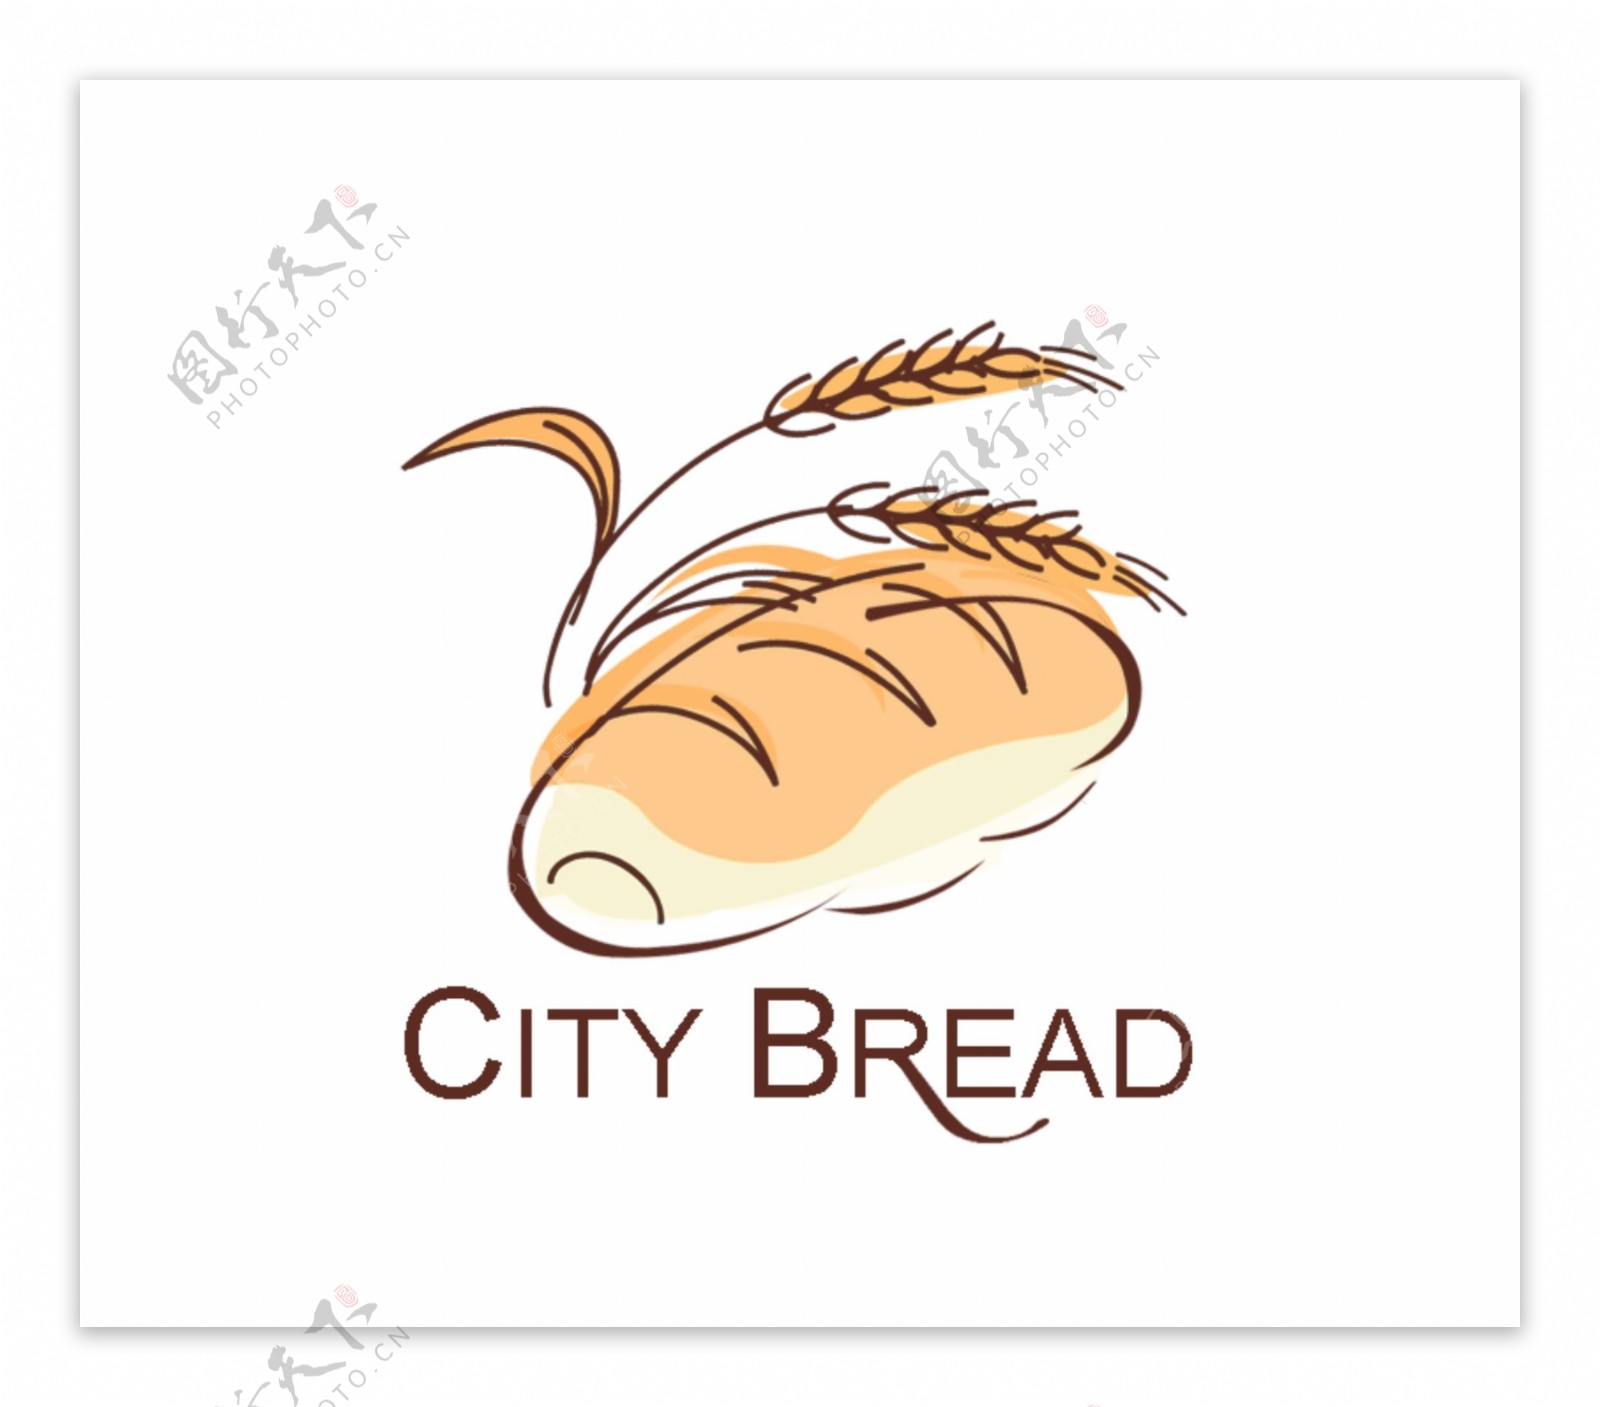 面包店logo图片